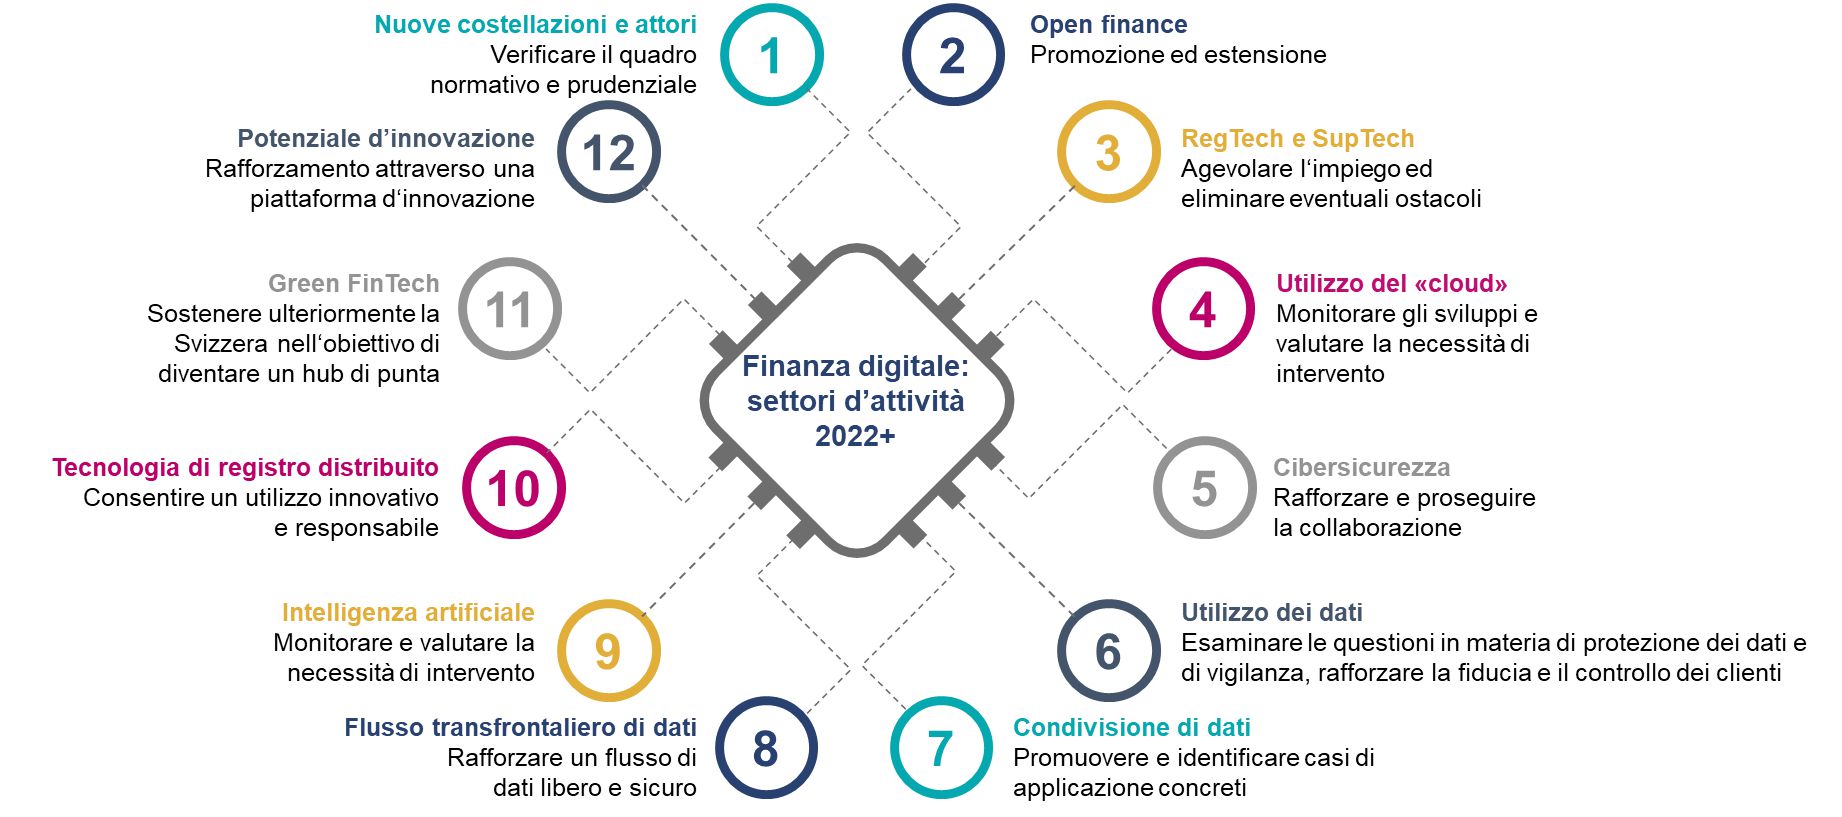 在《数字金融业务领域2022+》报告中，瑞士联邦委员会定义了12个业务领域及相应措施